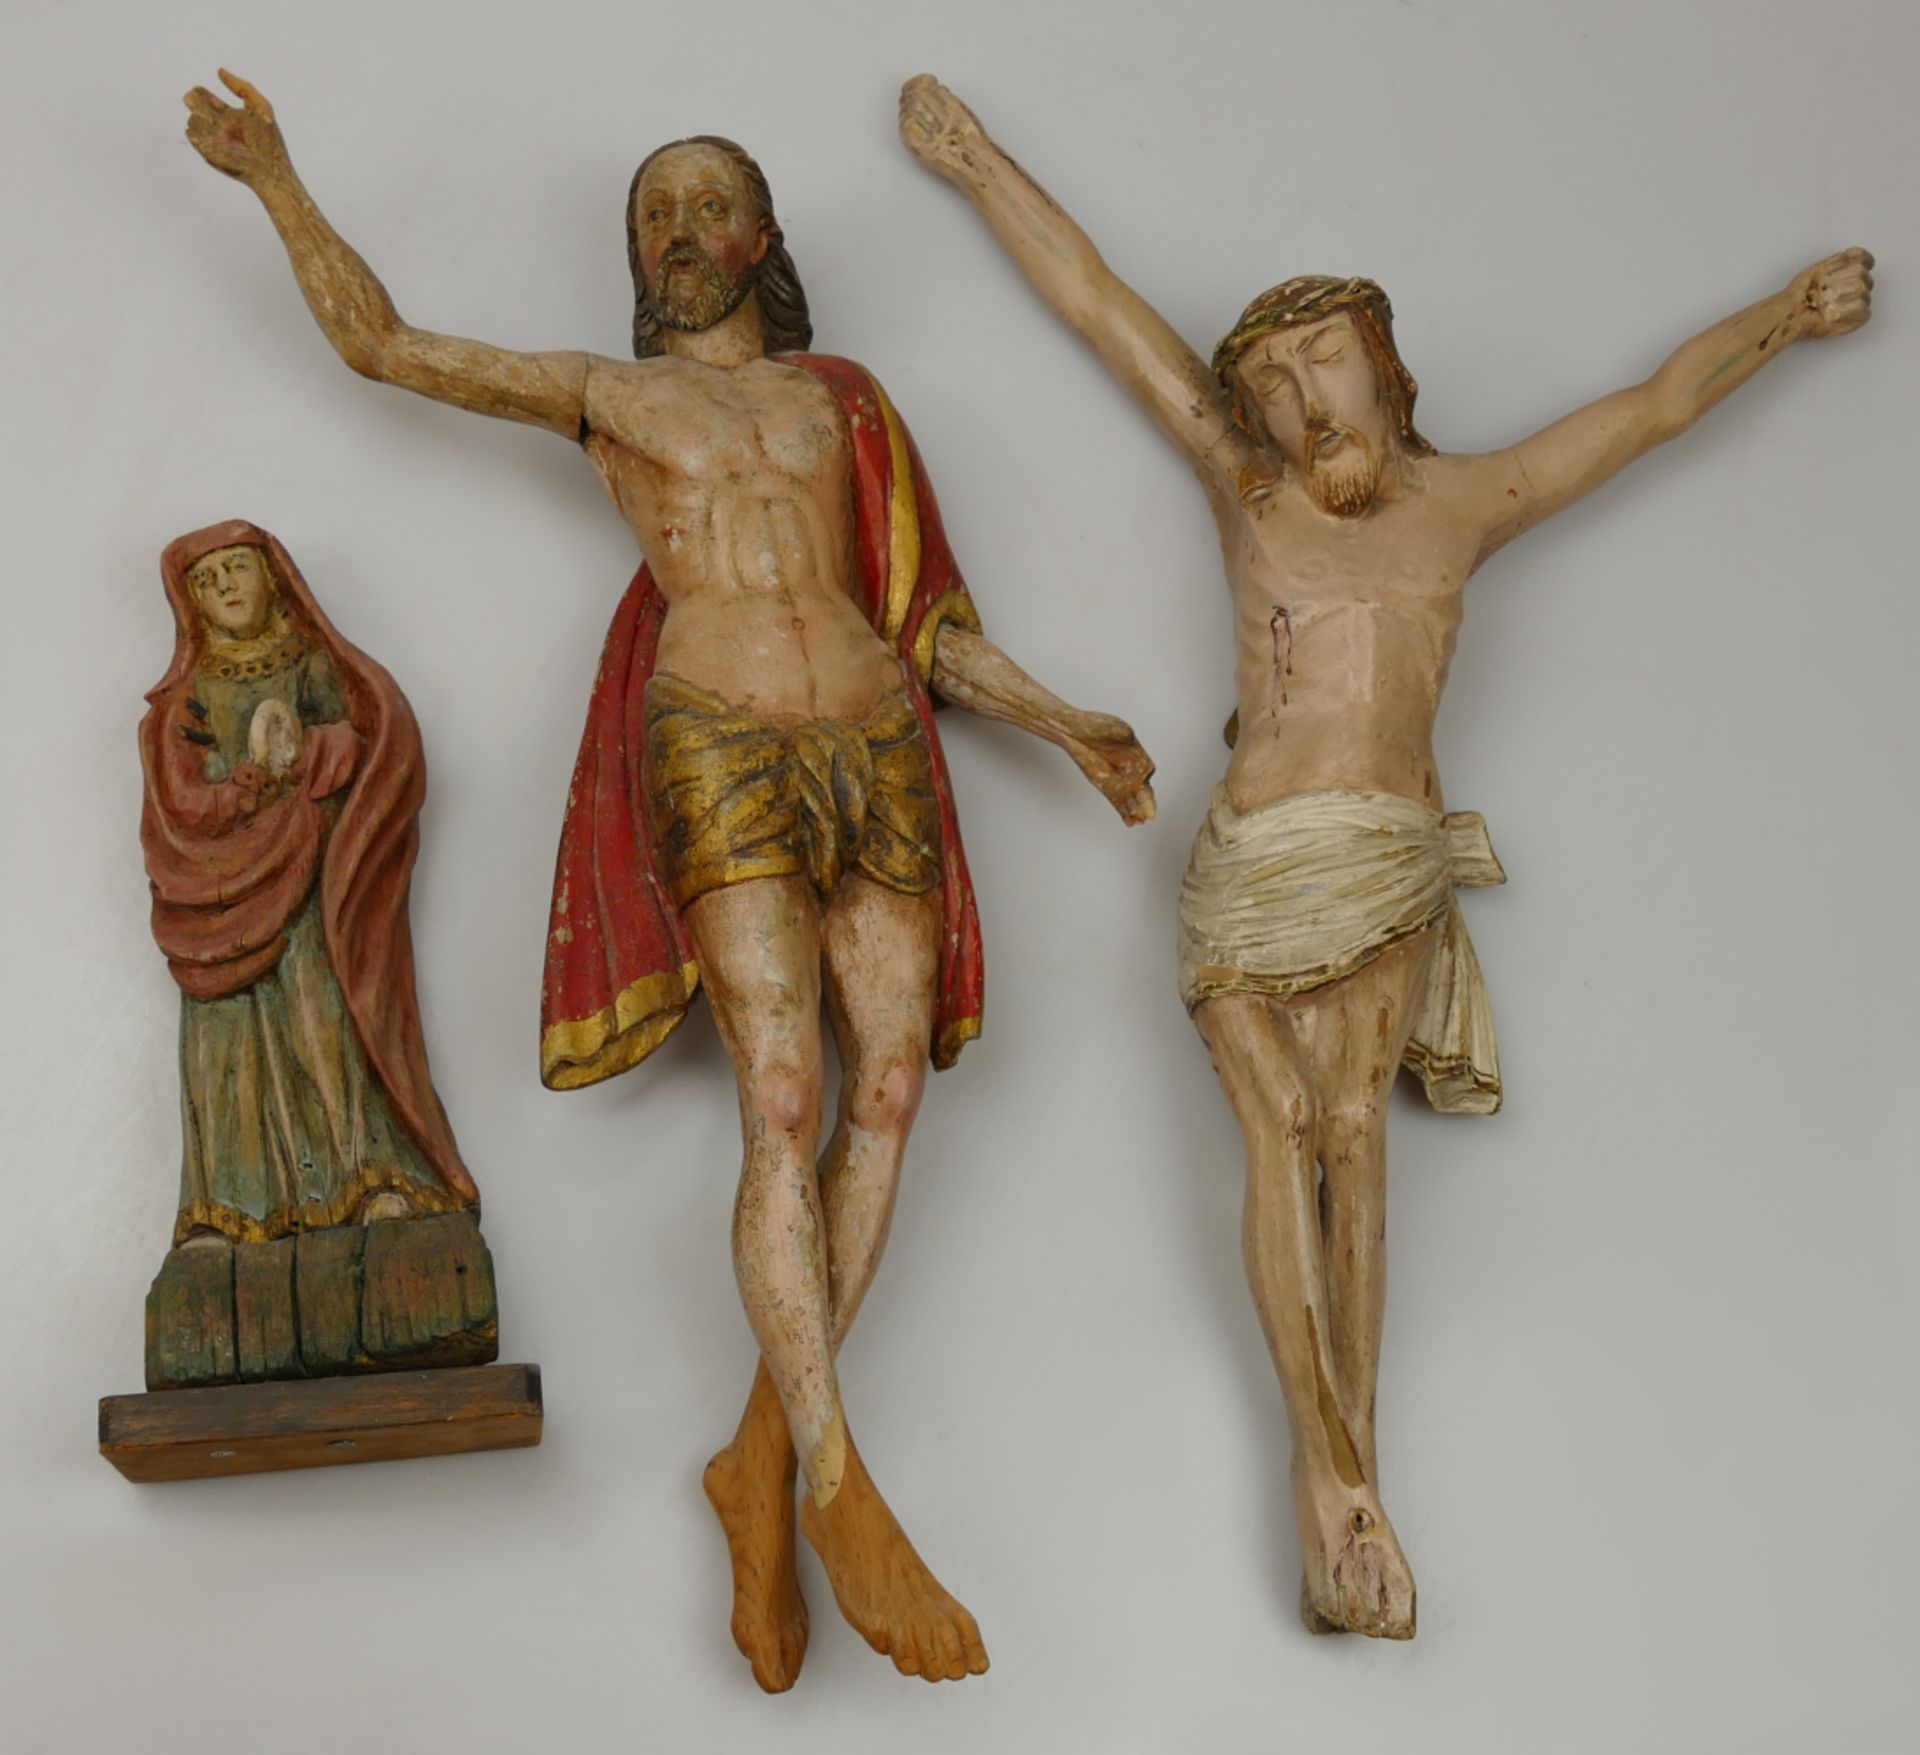 5 Holzfiguren wohl 19. Jh.: Kruzifixe bis H ca. 79cm, "Betende Madonna" H ca. 33cm, u.a., z.T besch.